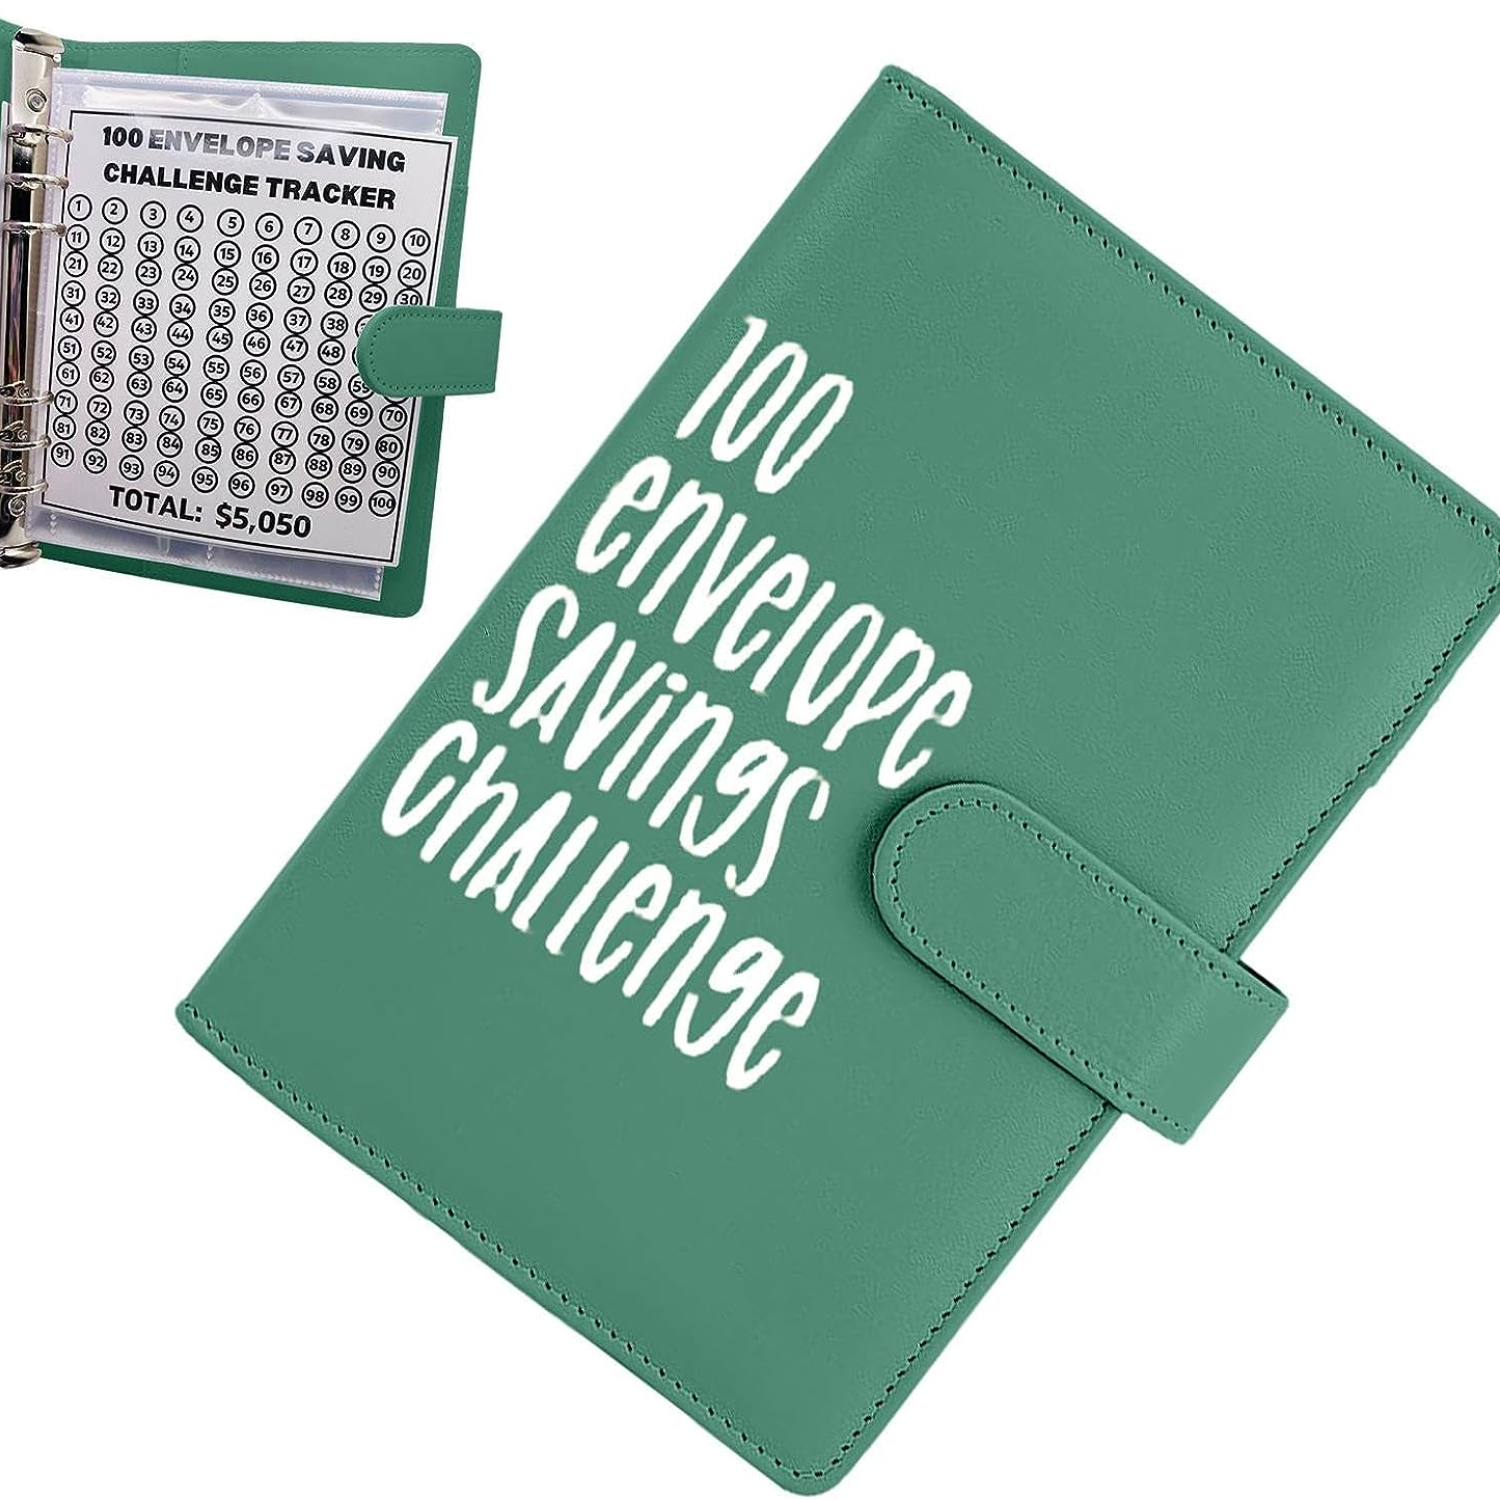  Carpeta de desafío de 100 sobres  Una manera fácil y divertida  de ahorrar dinero, kit de caja de desafíos de ahorro de efectivo, carpeta  de desafíos de ahorro, carpeta de